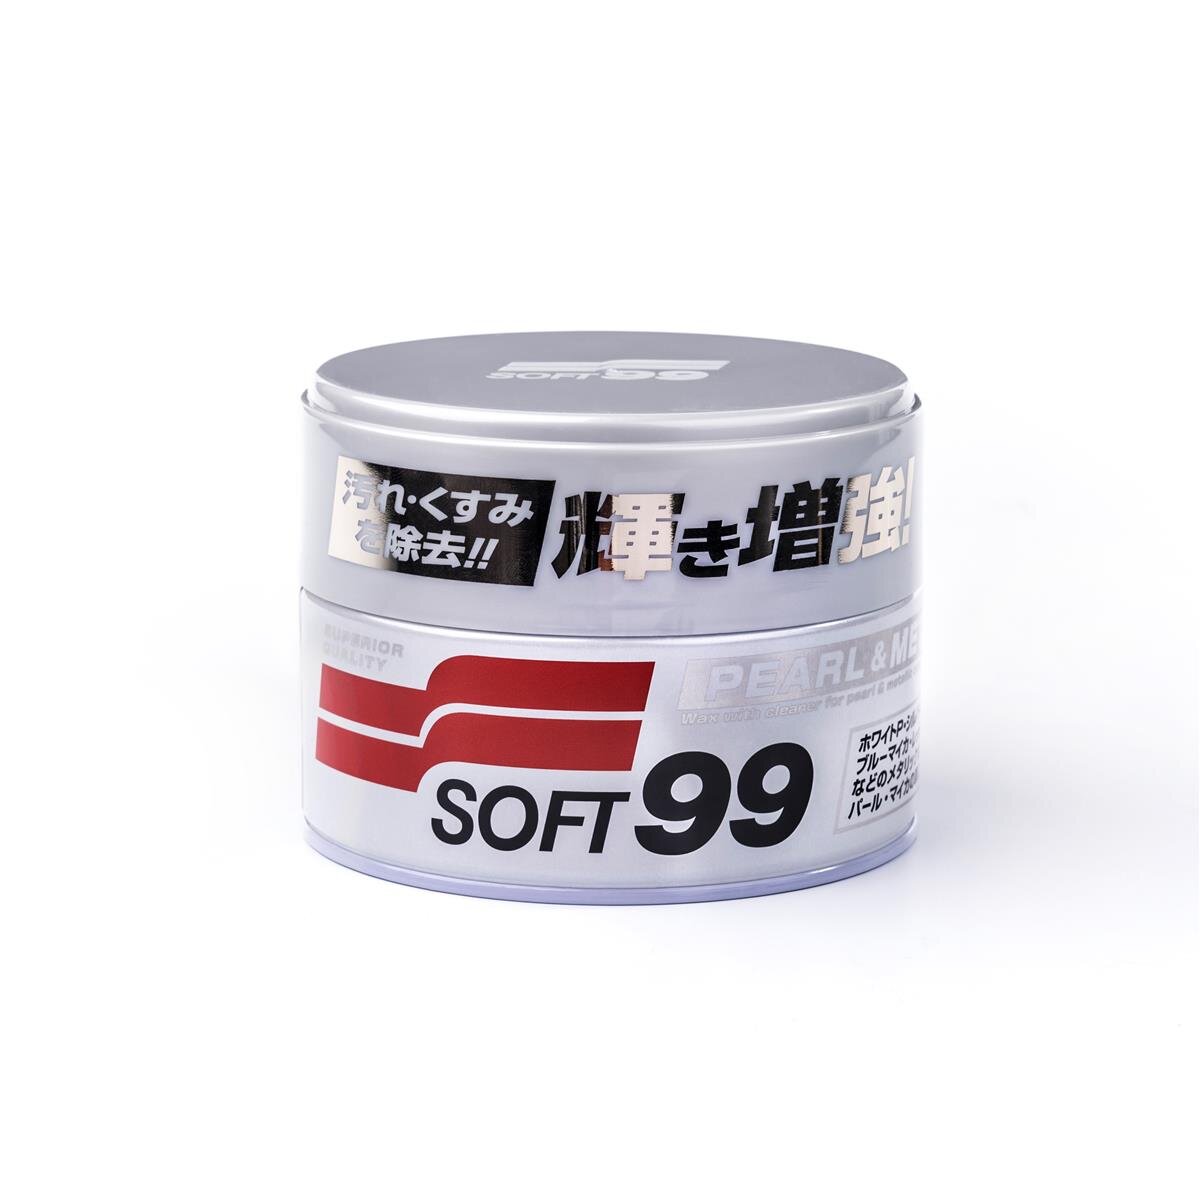 Soft99 Pearl & Metallic Soft Autowachs, zur Lackvesiegelung, Lackschu,  14,99 €